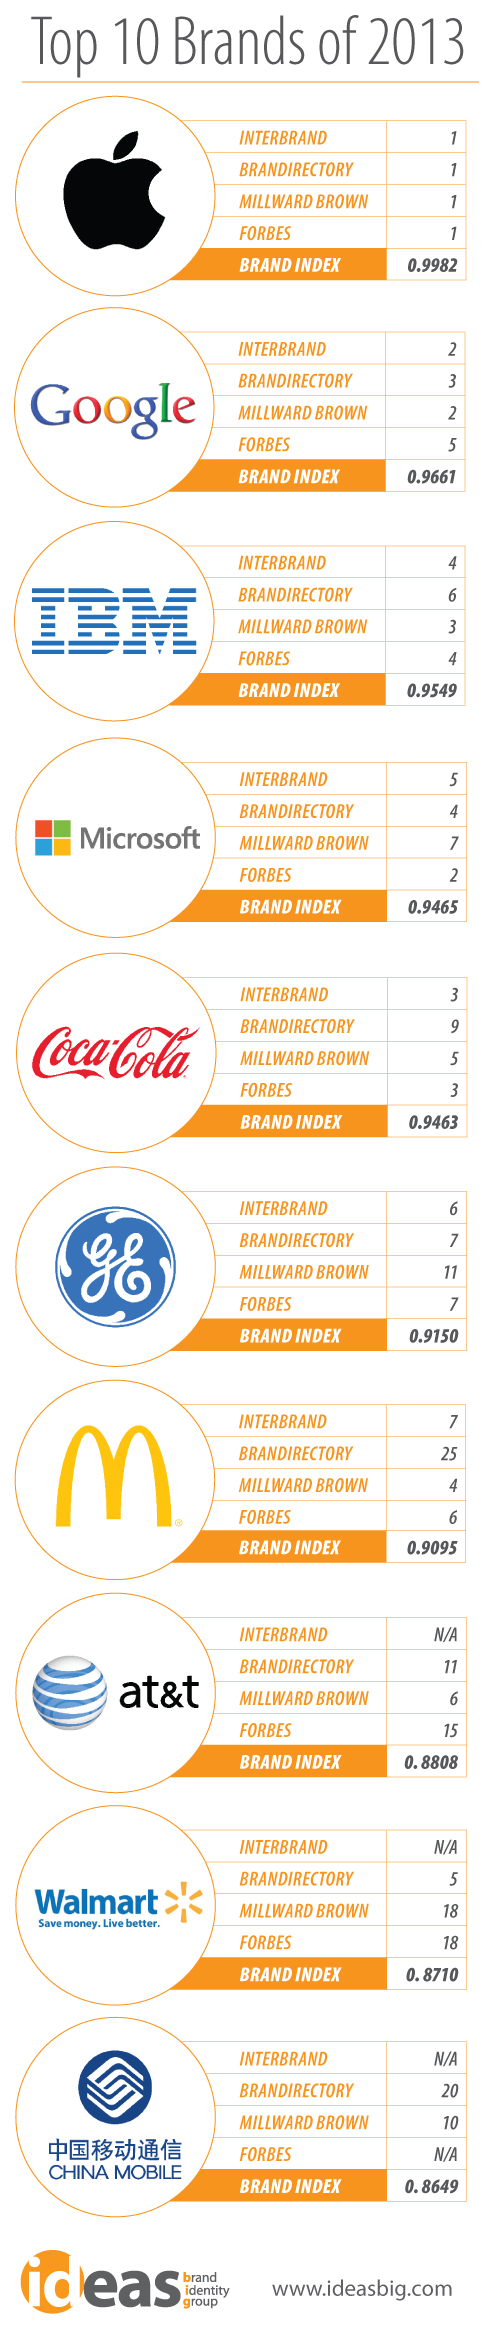 Top 10 Global Brands of 2013